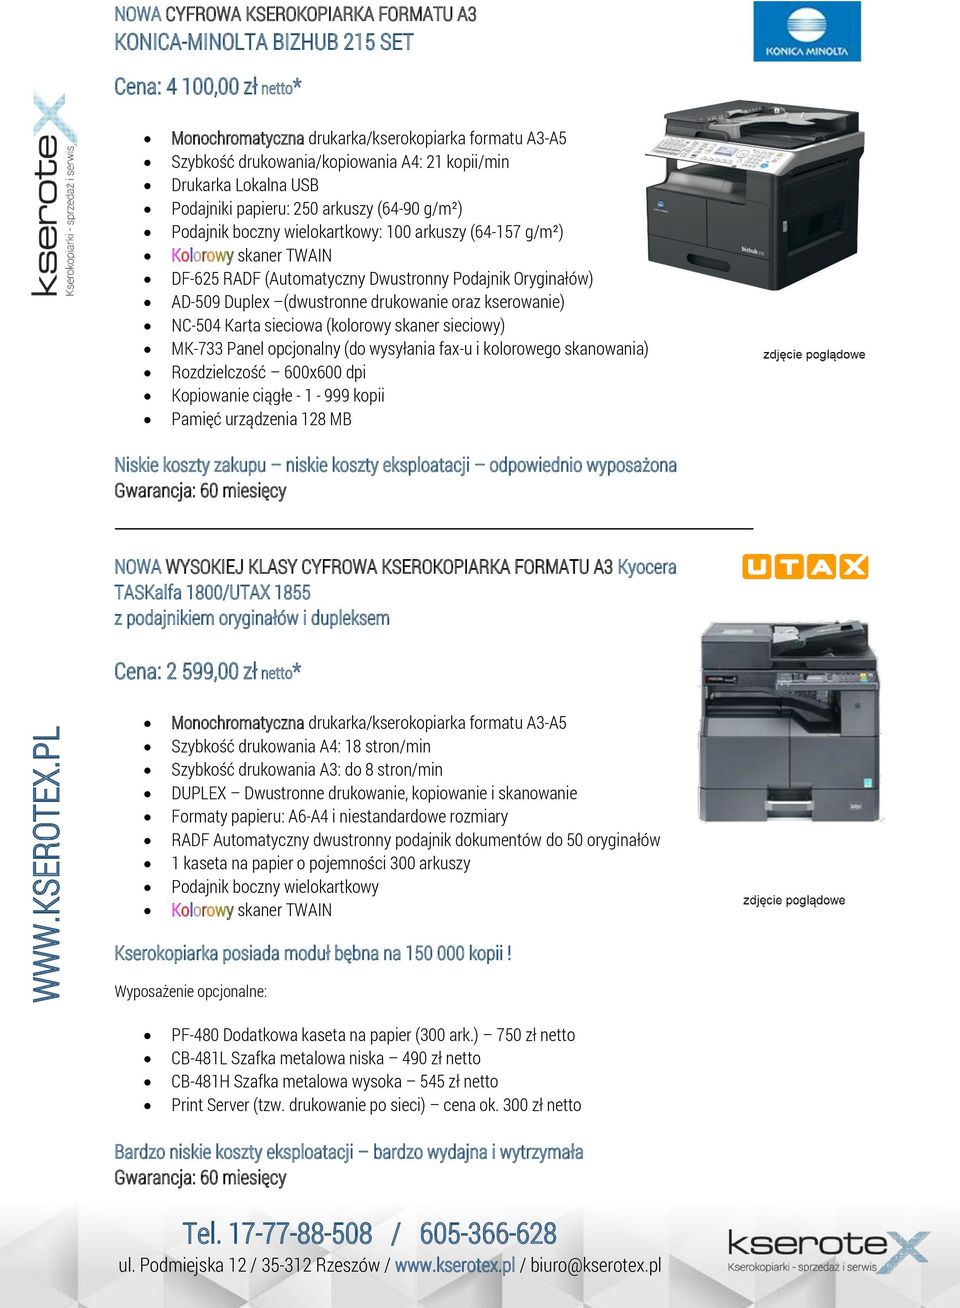 drukowanie oraz kserowanie) NC-504 Karta sieciowa (kolorowy skaner sieciowy) MK-733 Panel opcjonalny (do wysyłania fax-u i kolorowego skanowania) Rozdzielczość 600x600 dpi Kopiowanie ciągłe - 1-999